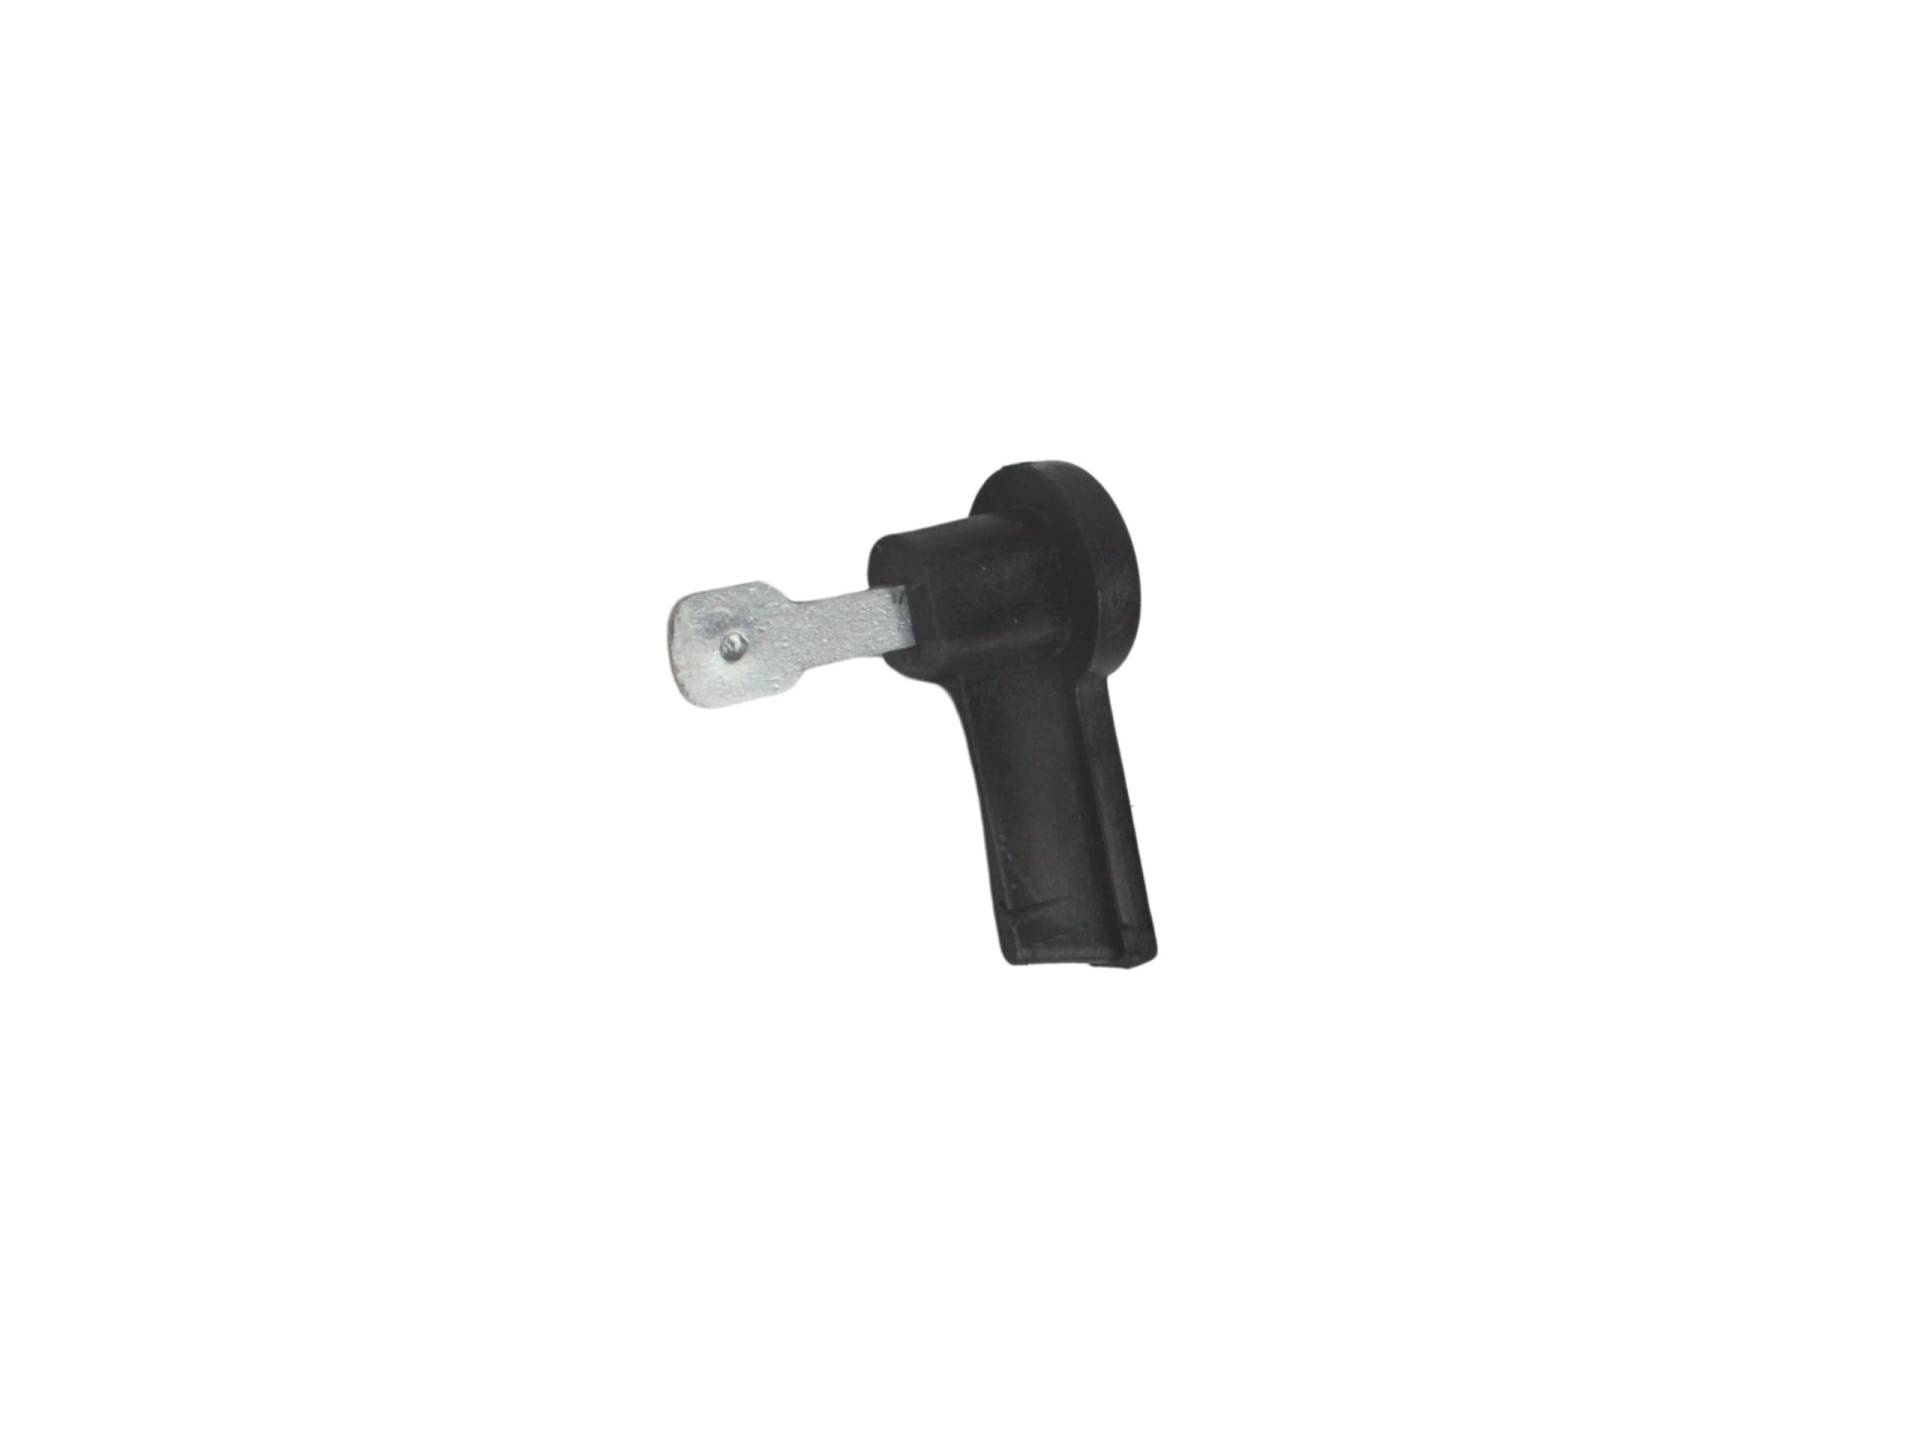 Zündschlüssel Schlüssel Zündung Schwarz für Zündschloss Simson S50 S51 S70 KR51/1-2 Duo SR 2-4 von BISOMO